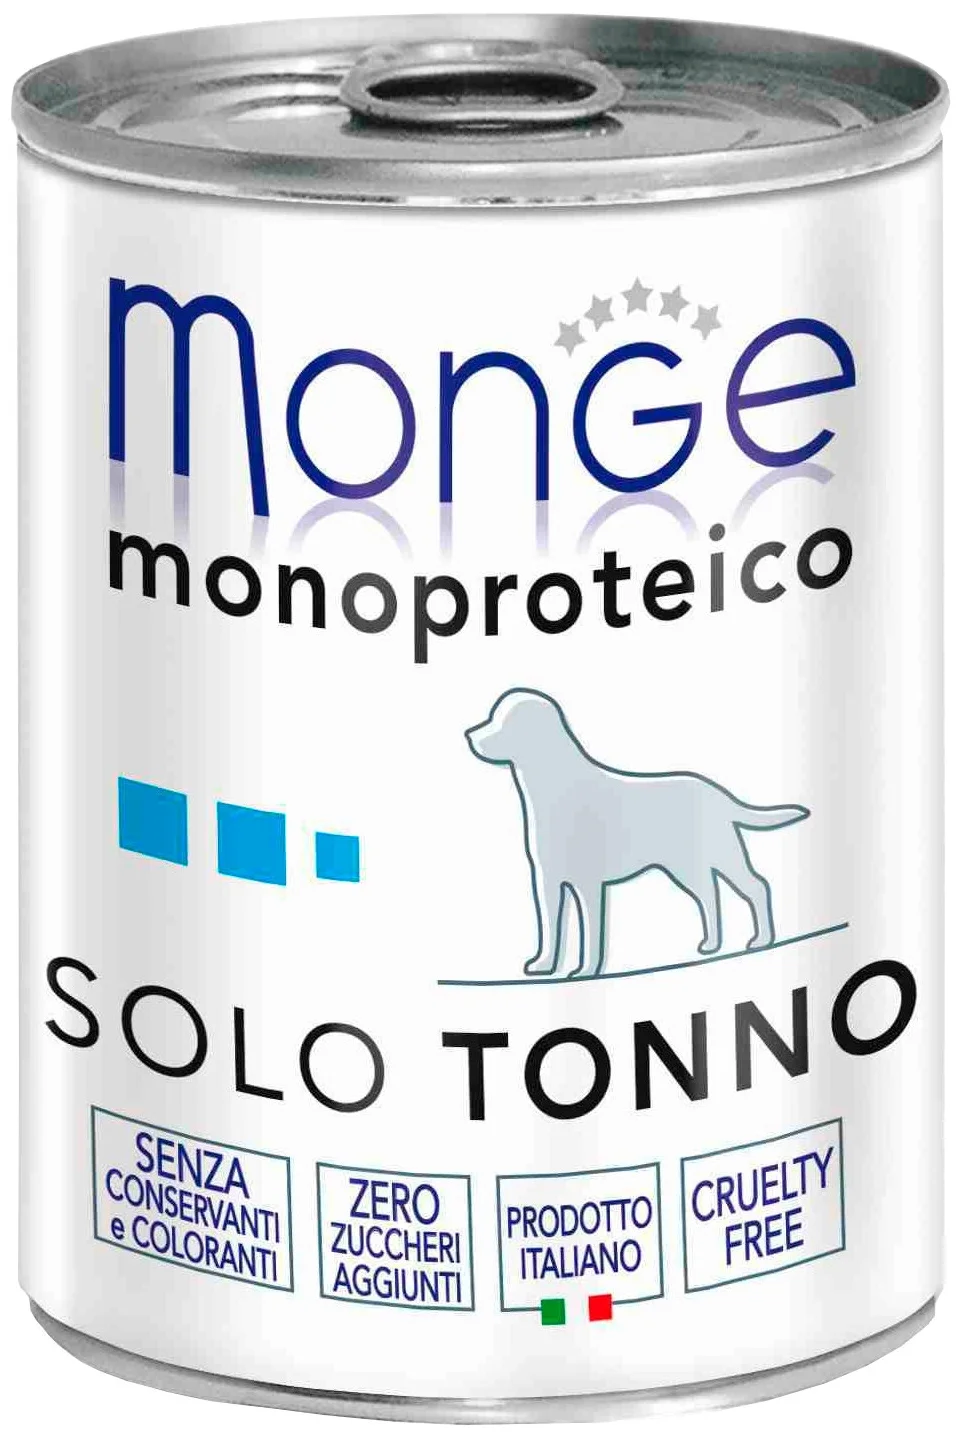 Monge "Monoprotein" - линейка: Monoprotein